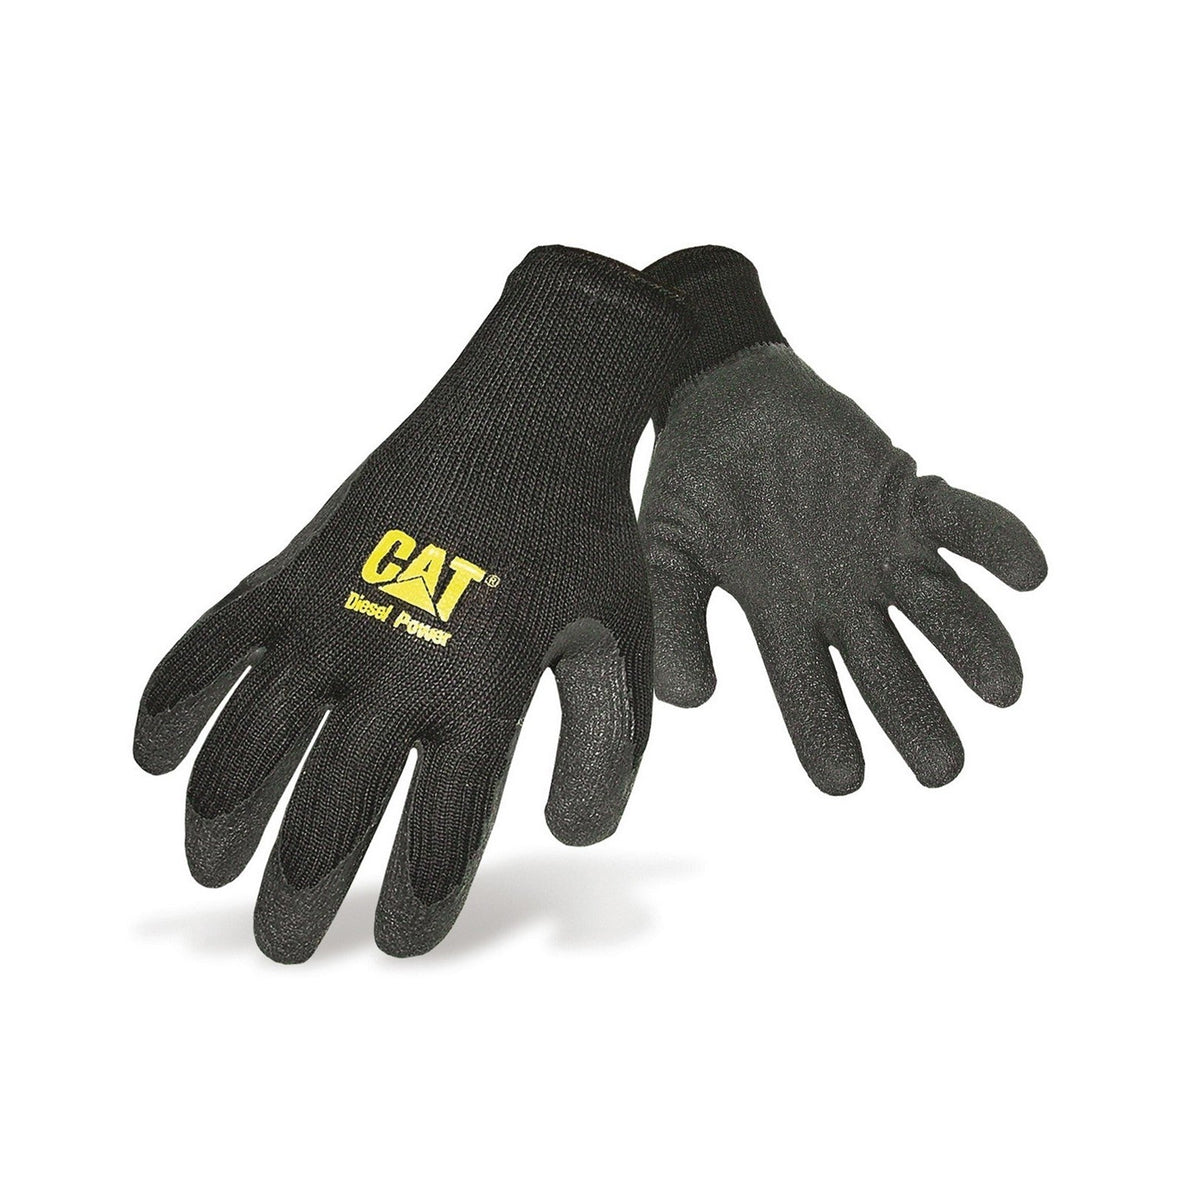 Caterpillar Latex Palm Glove in Black